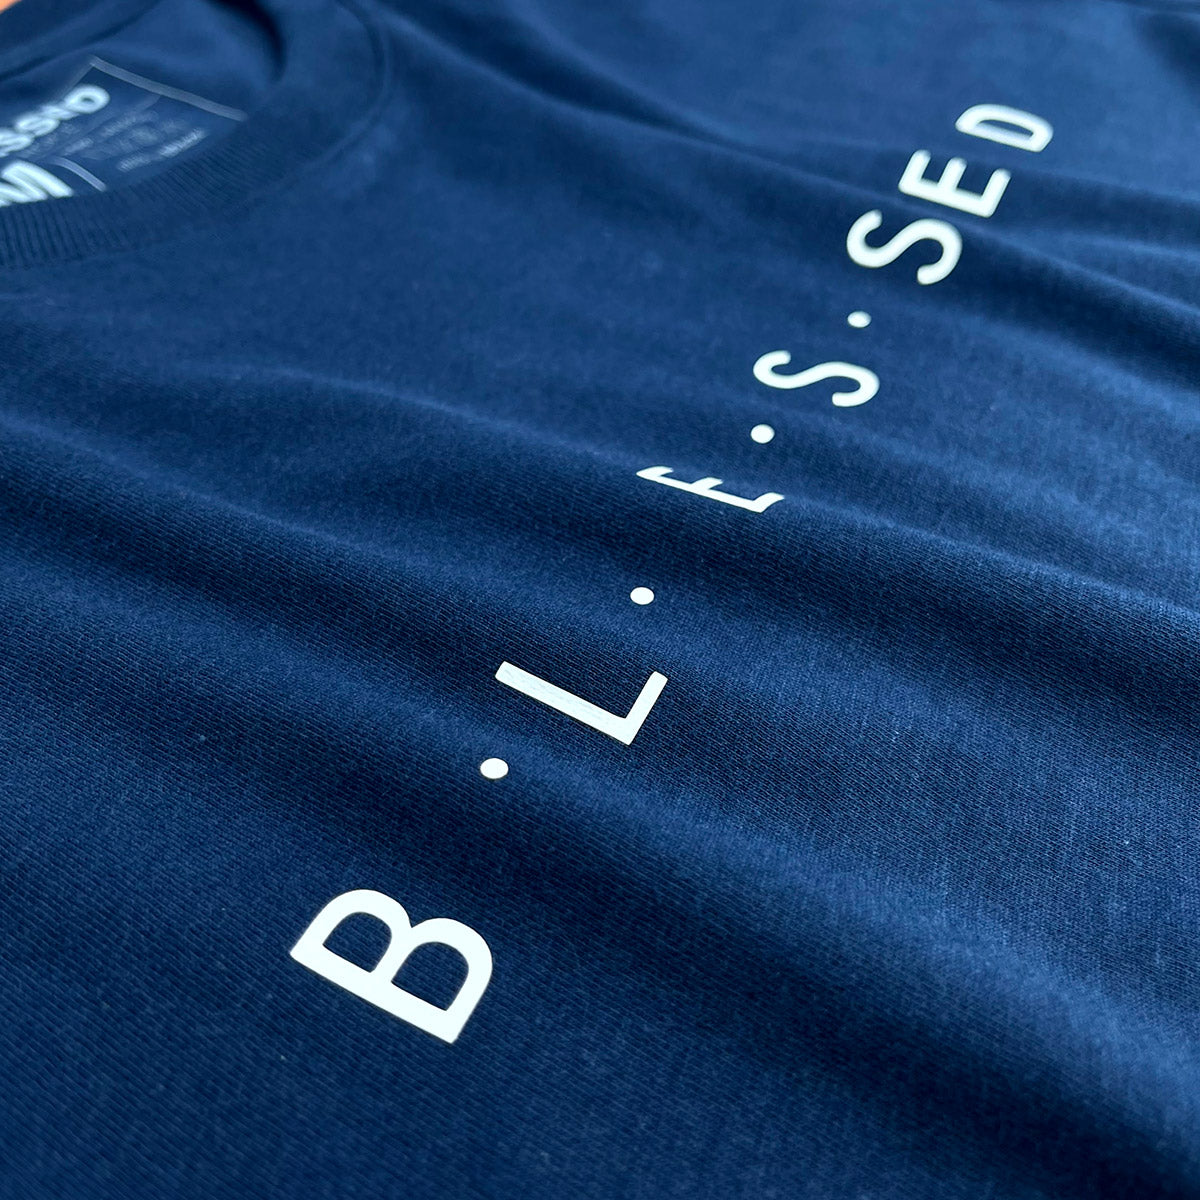 Camiseta Masculina Azul B.L.E.S.S.E.D